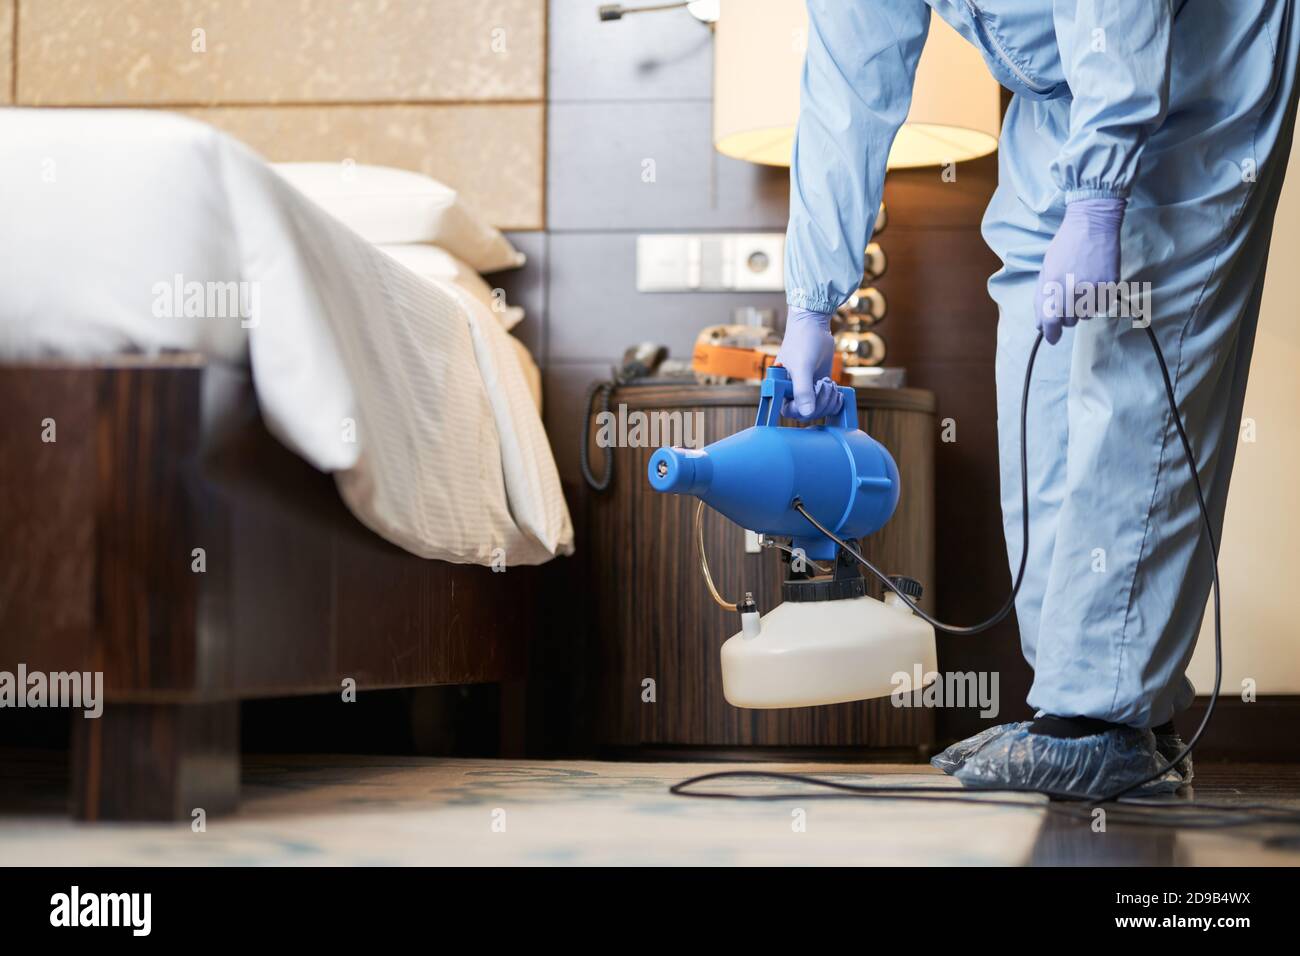 Arbeiter in Schuhüberzügen, die Desinfektionsmittel benutzen, während sie im Hotelzimmer stehen. Coronavirus und Quarantänekonzept Stockfoto